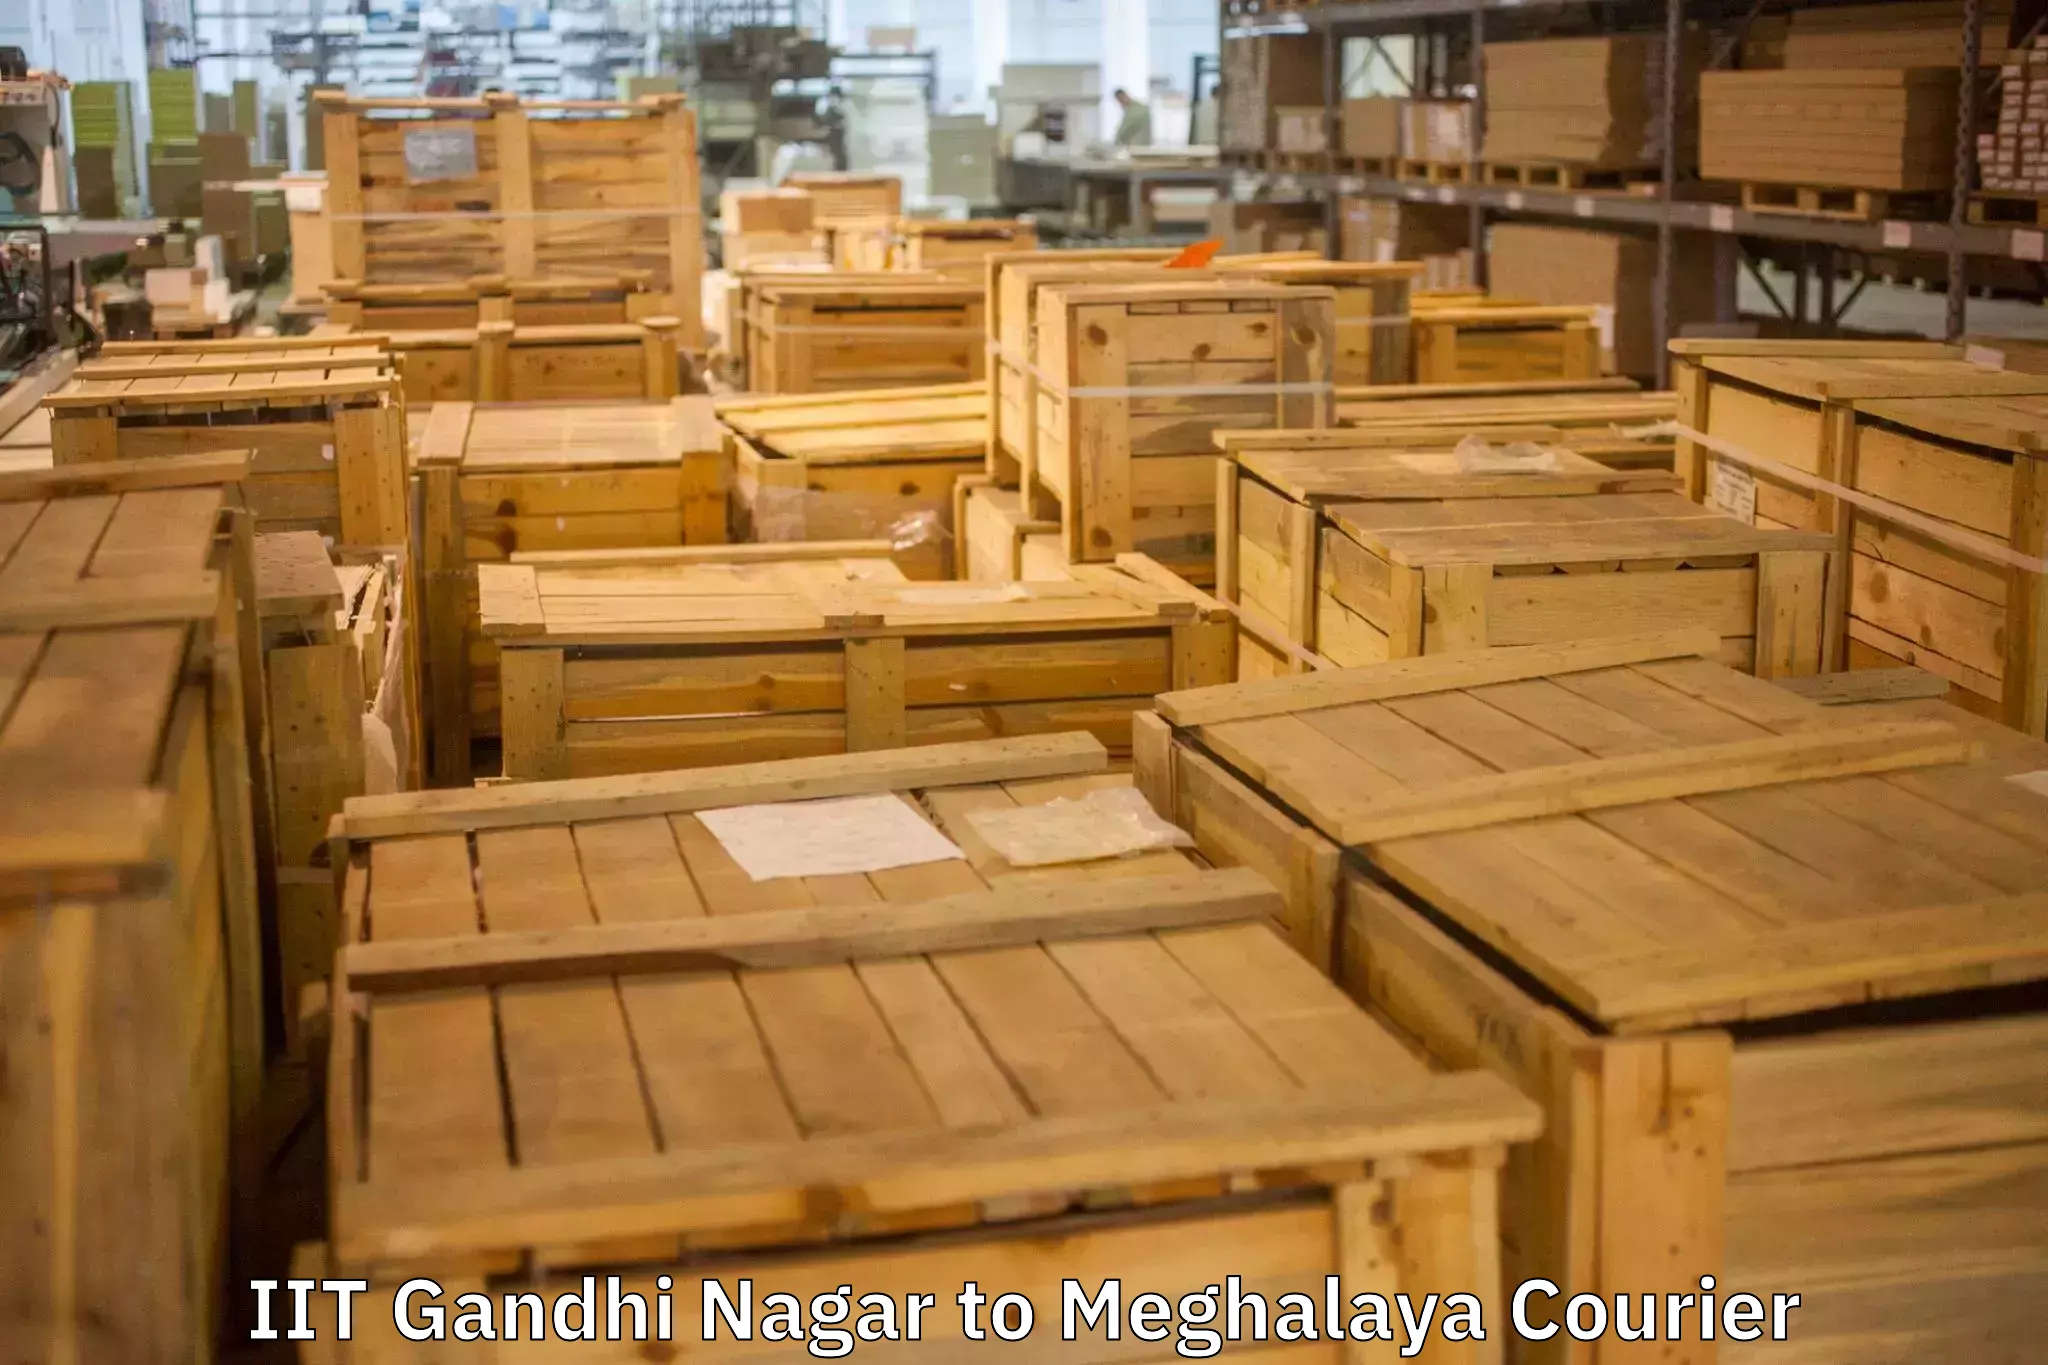 Packing and moving services IIT Gandhi Nagar to Meghalaya